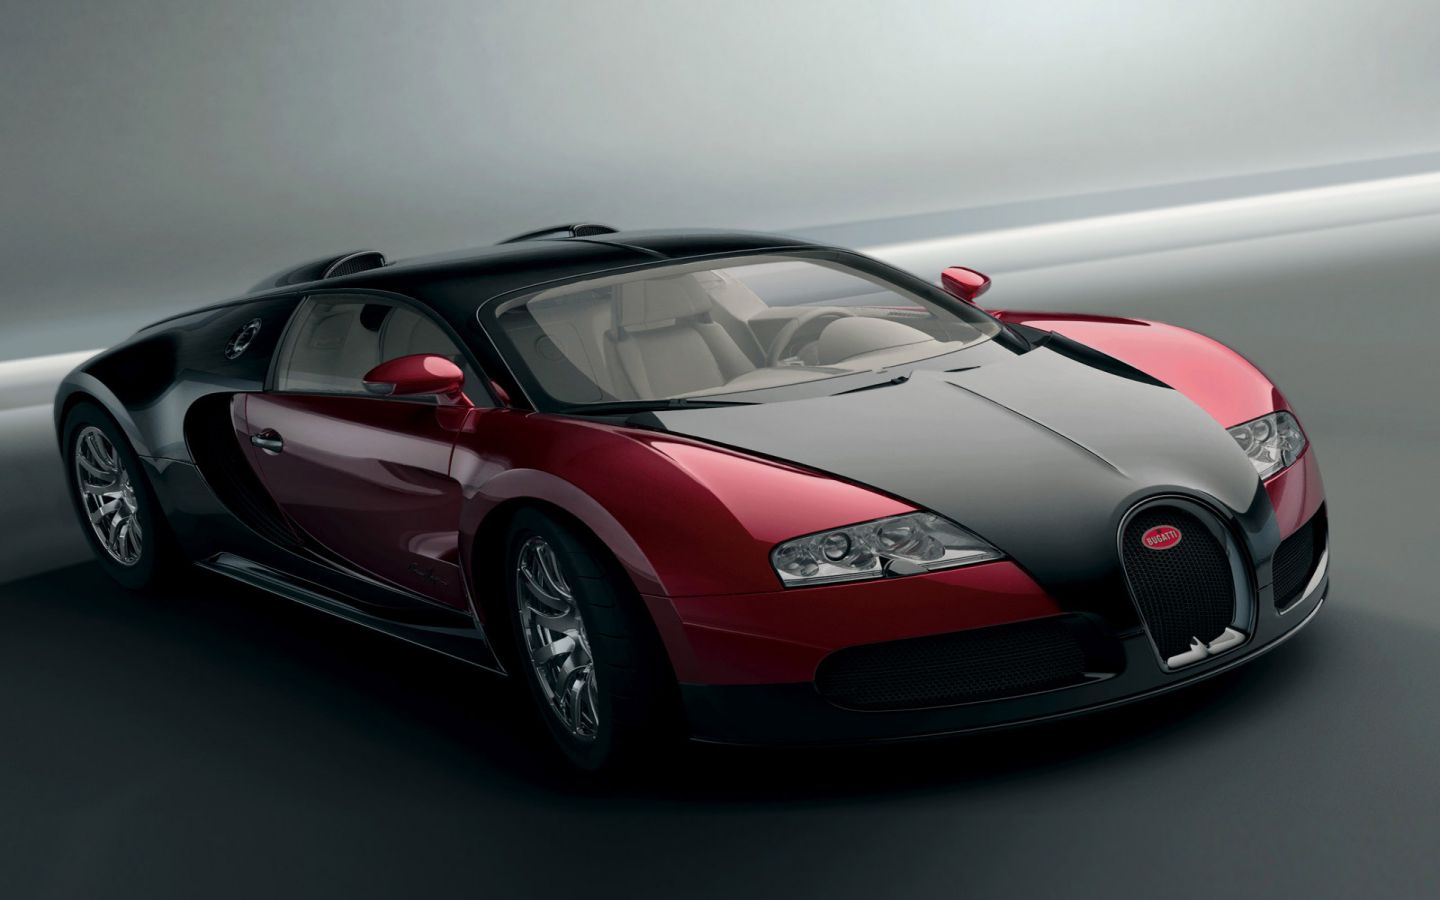 Bugatti Veyron Wallpaper HD In Cars Imageci